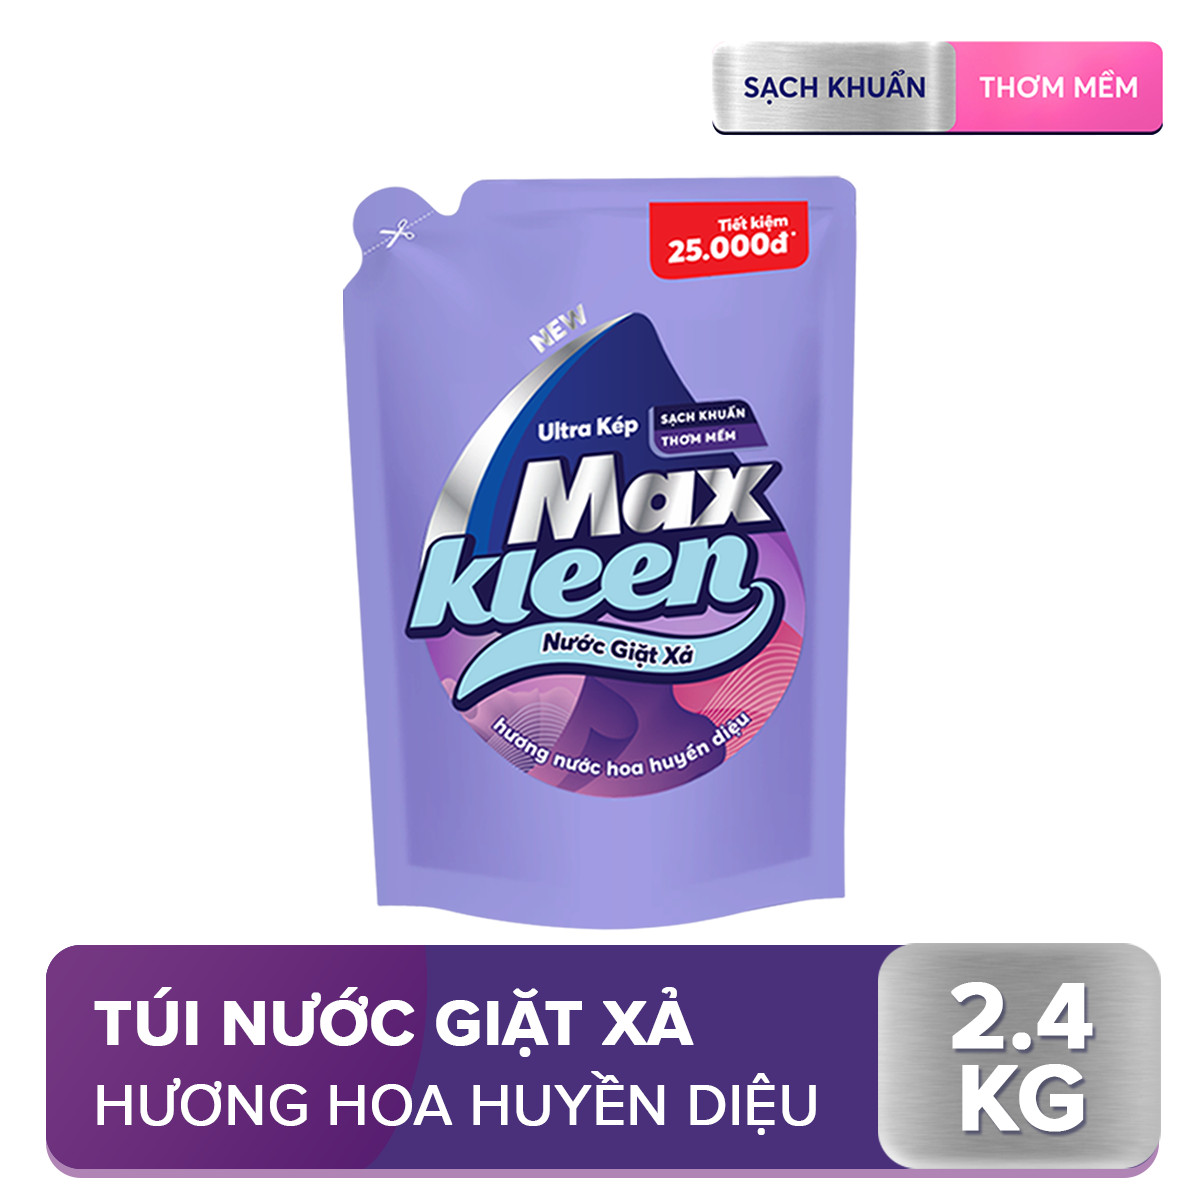 Túi Nước Giặt Xả MaxKleen Hương Huyền Diệu Sạch Khuẩn Thơm Mềm Tiện Lợi & Tiết Kiệm 2.4KG